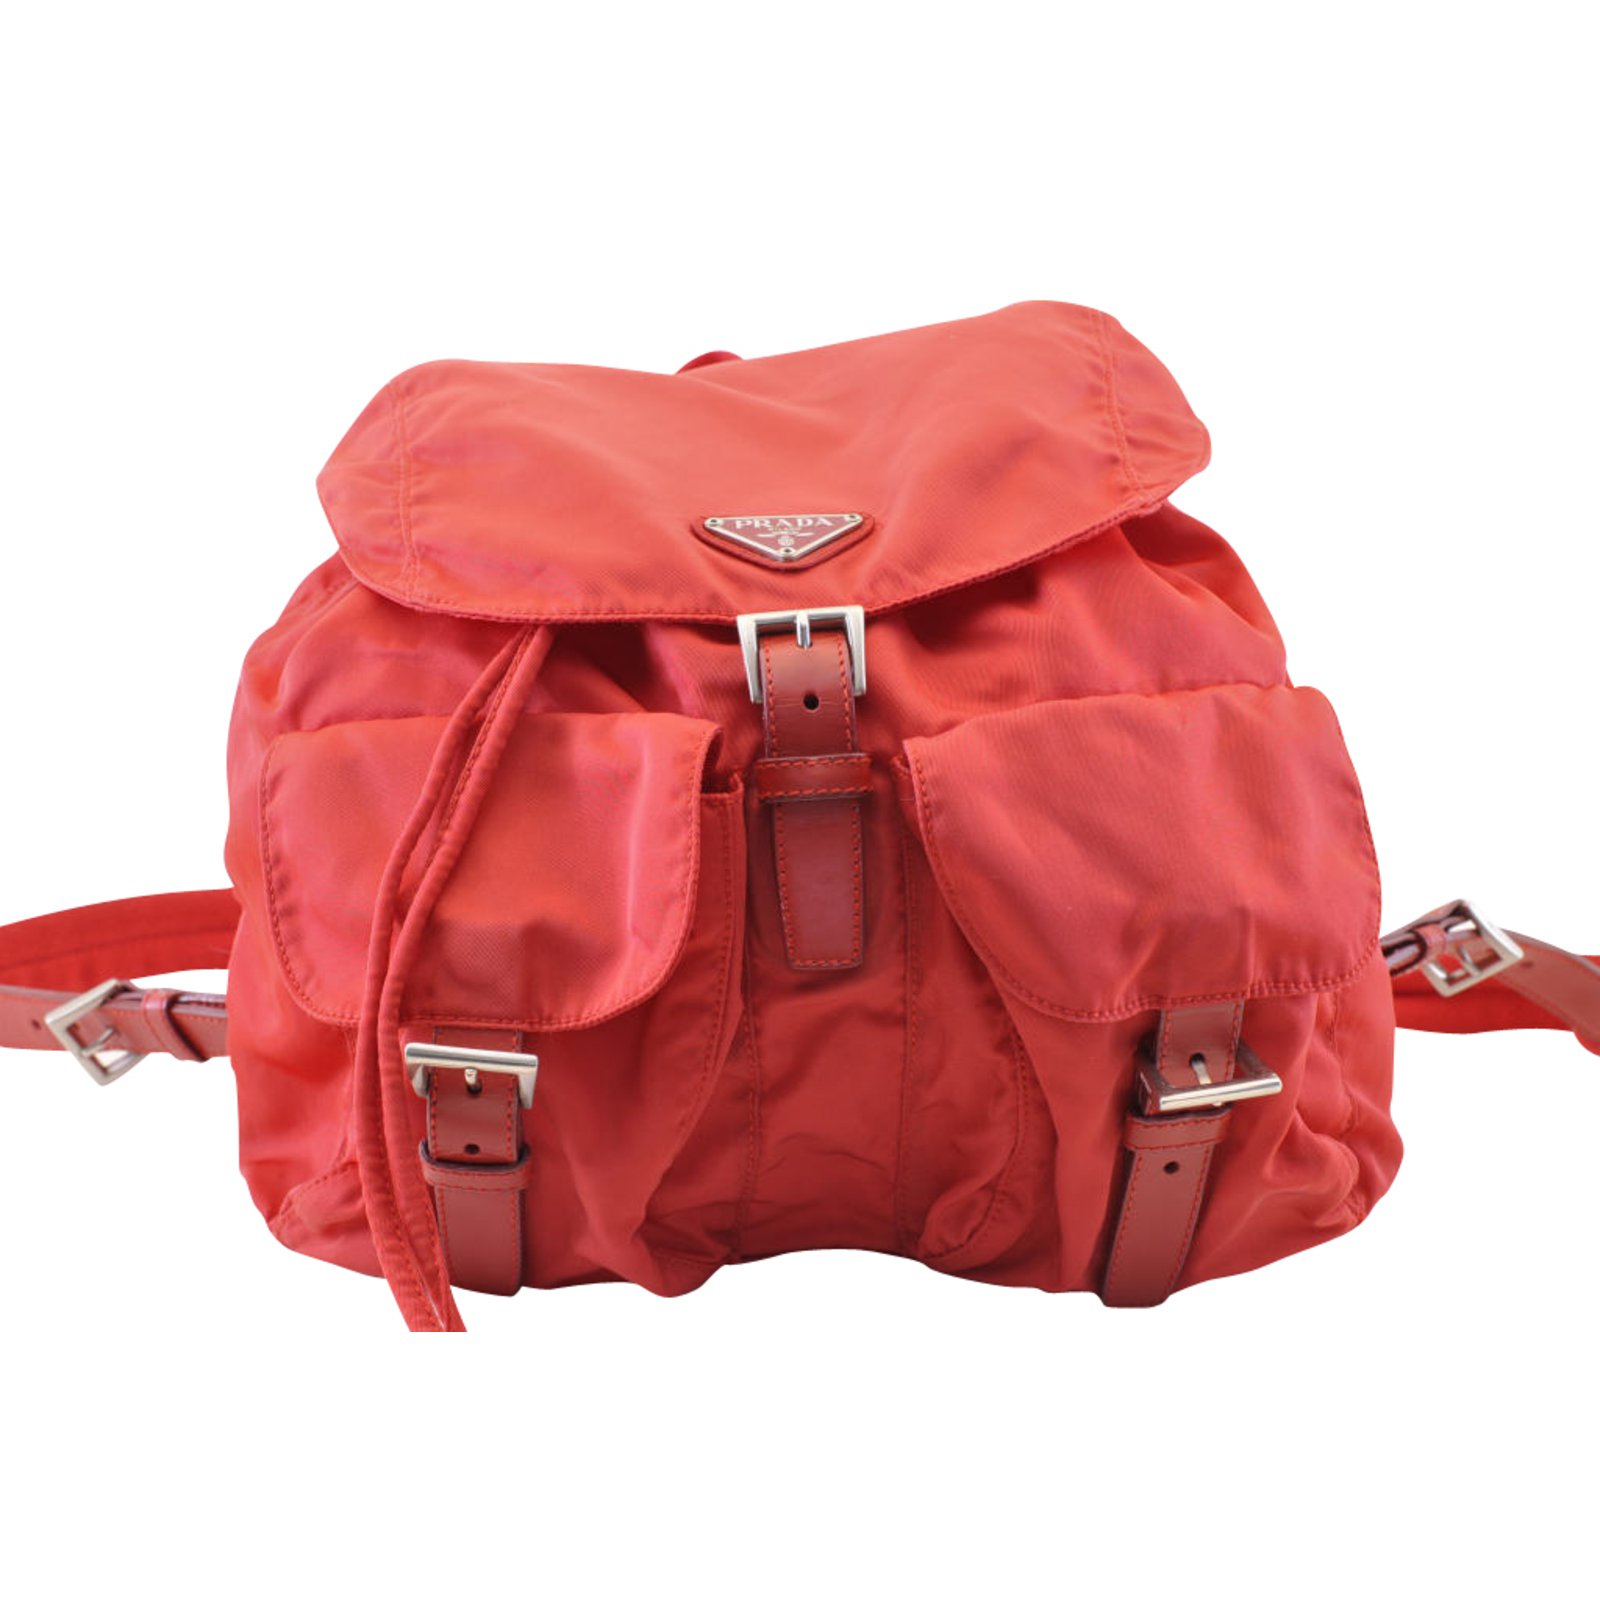 prada backpack 2019